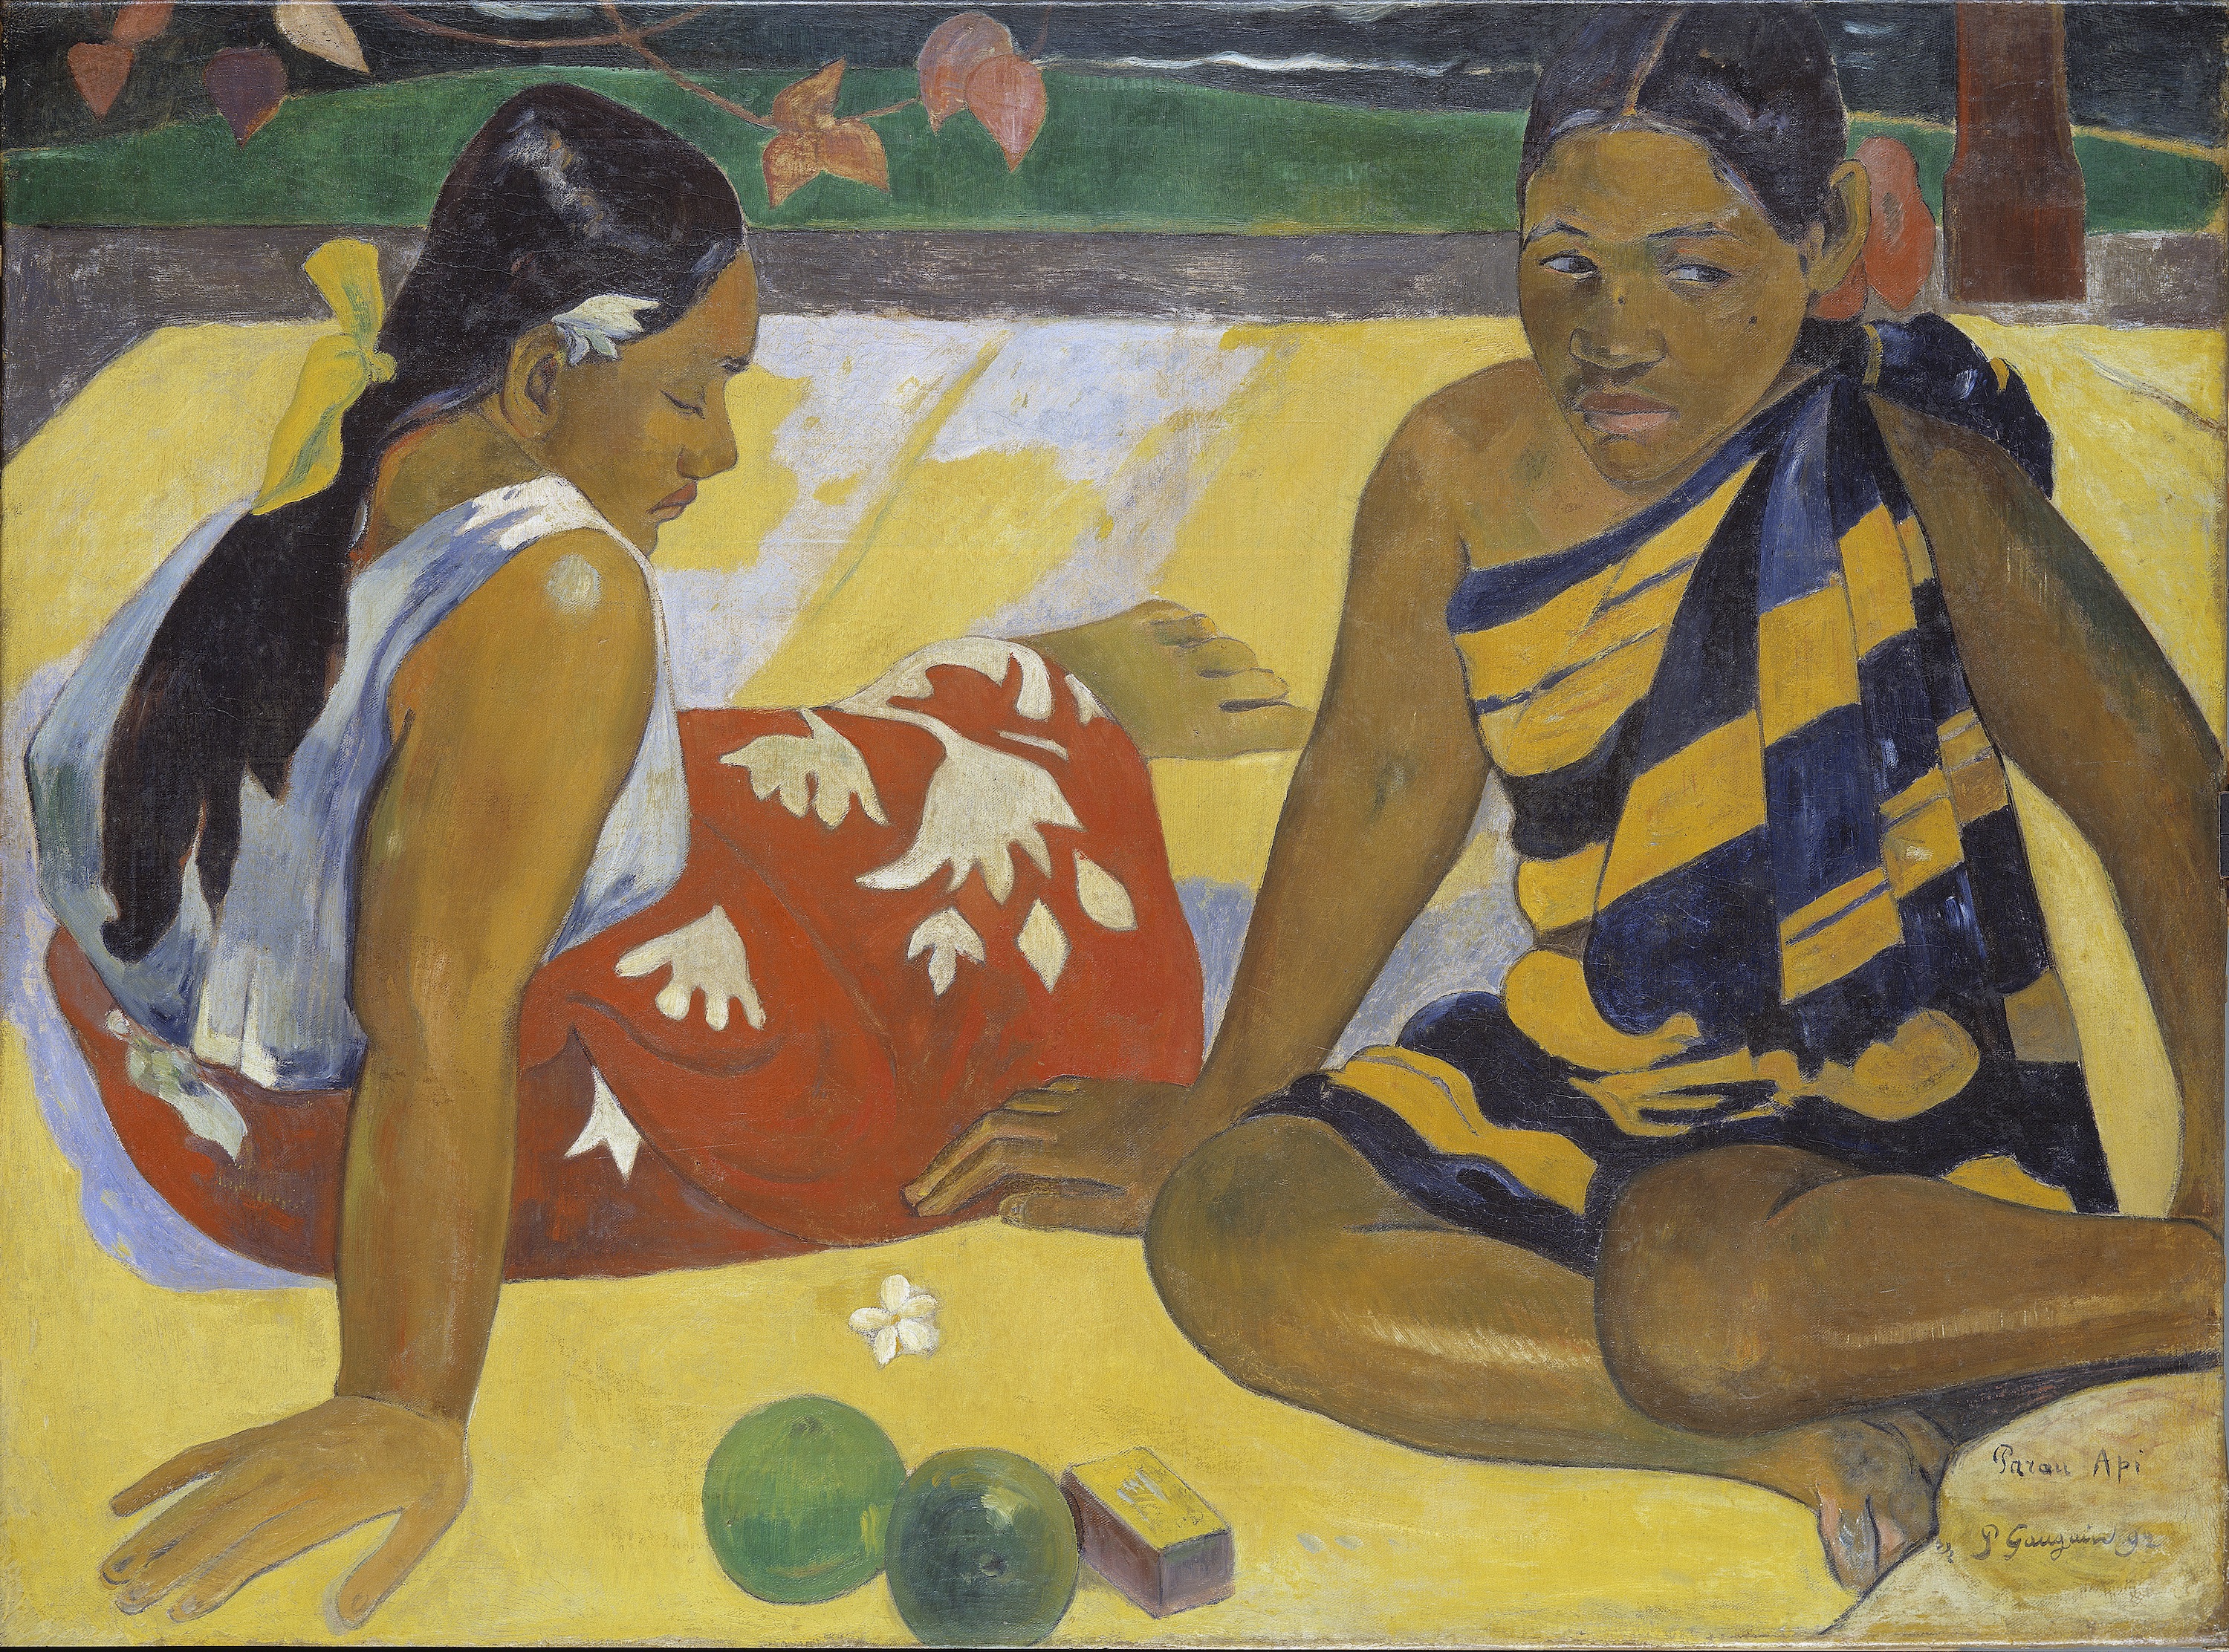 パラウ・アピ (知らせ) by Paul Gauguin - 1892年 - 92 x 67 cm 